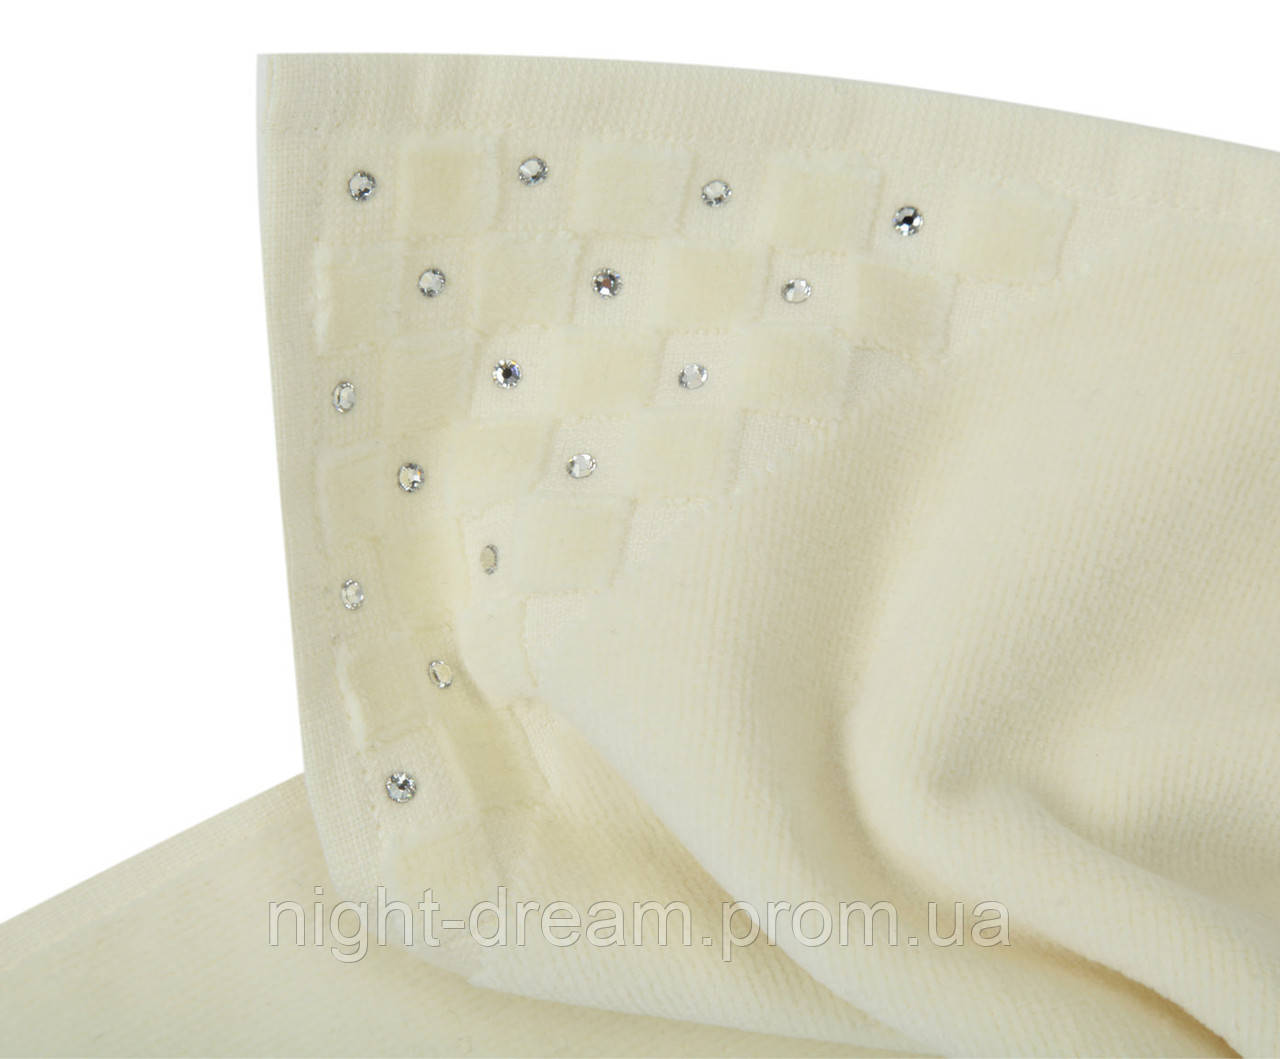 Эксклюзивные полотенца из высококачественного хлопка, украшенные  кристаллами SWAROWSKI.  Hamam PREMIUM